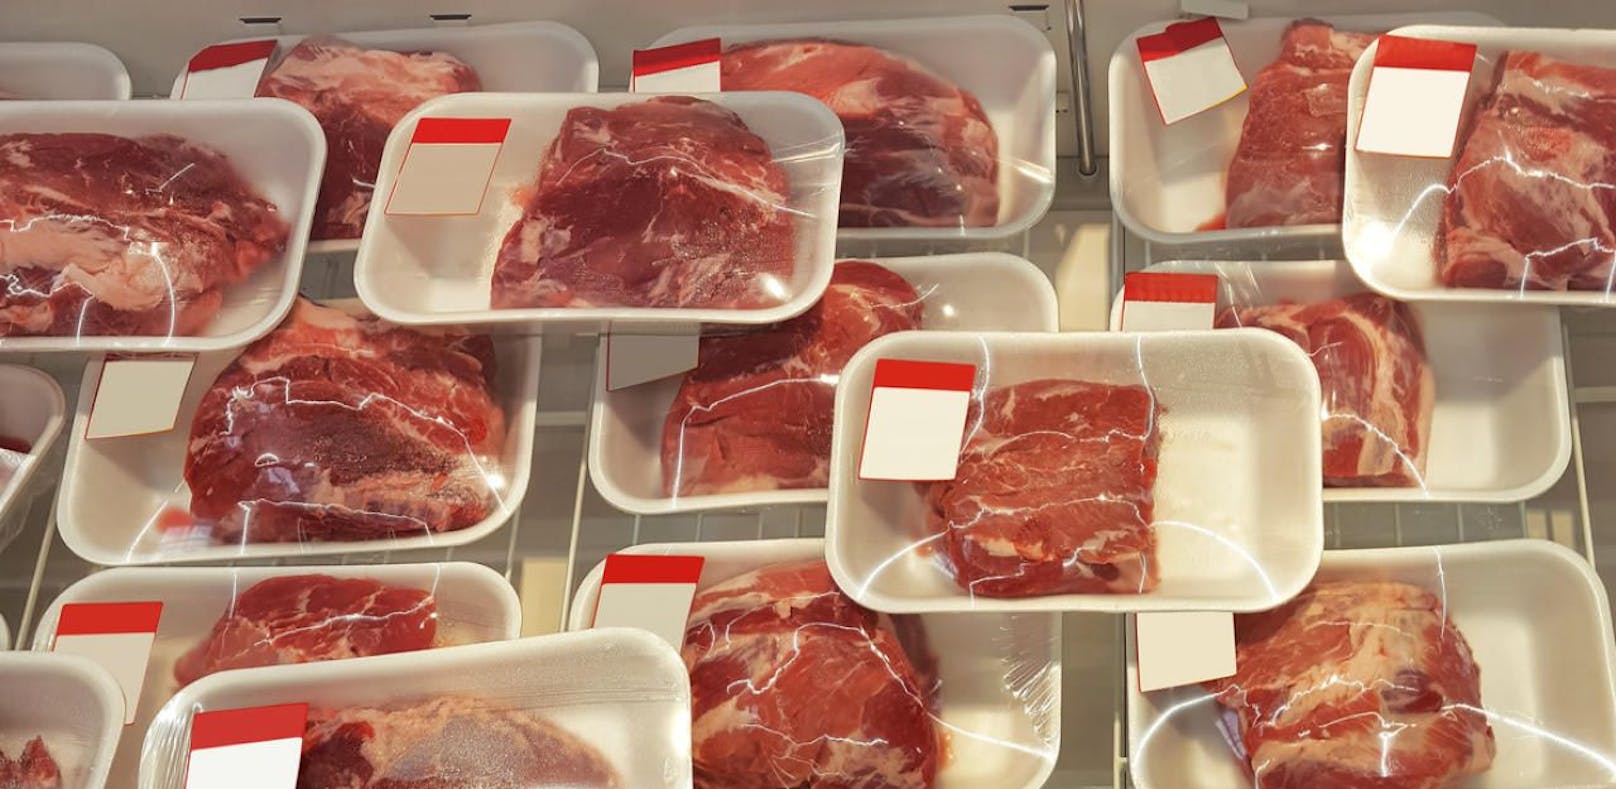 Steirer verkauft seit 30 Jahren nicht geprüftes Fleisch